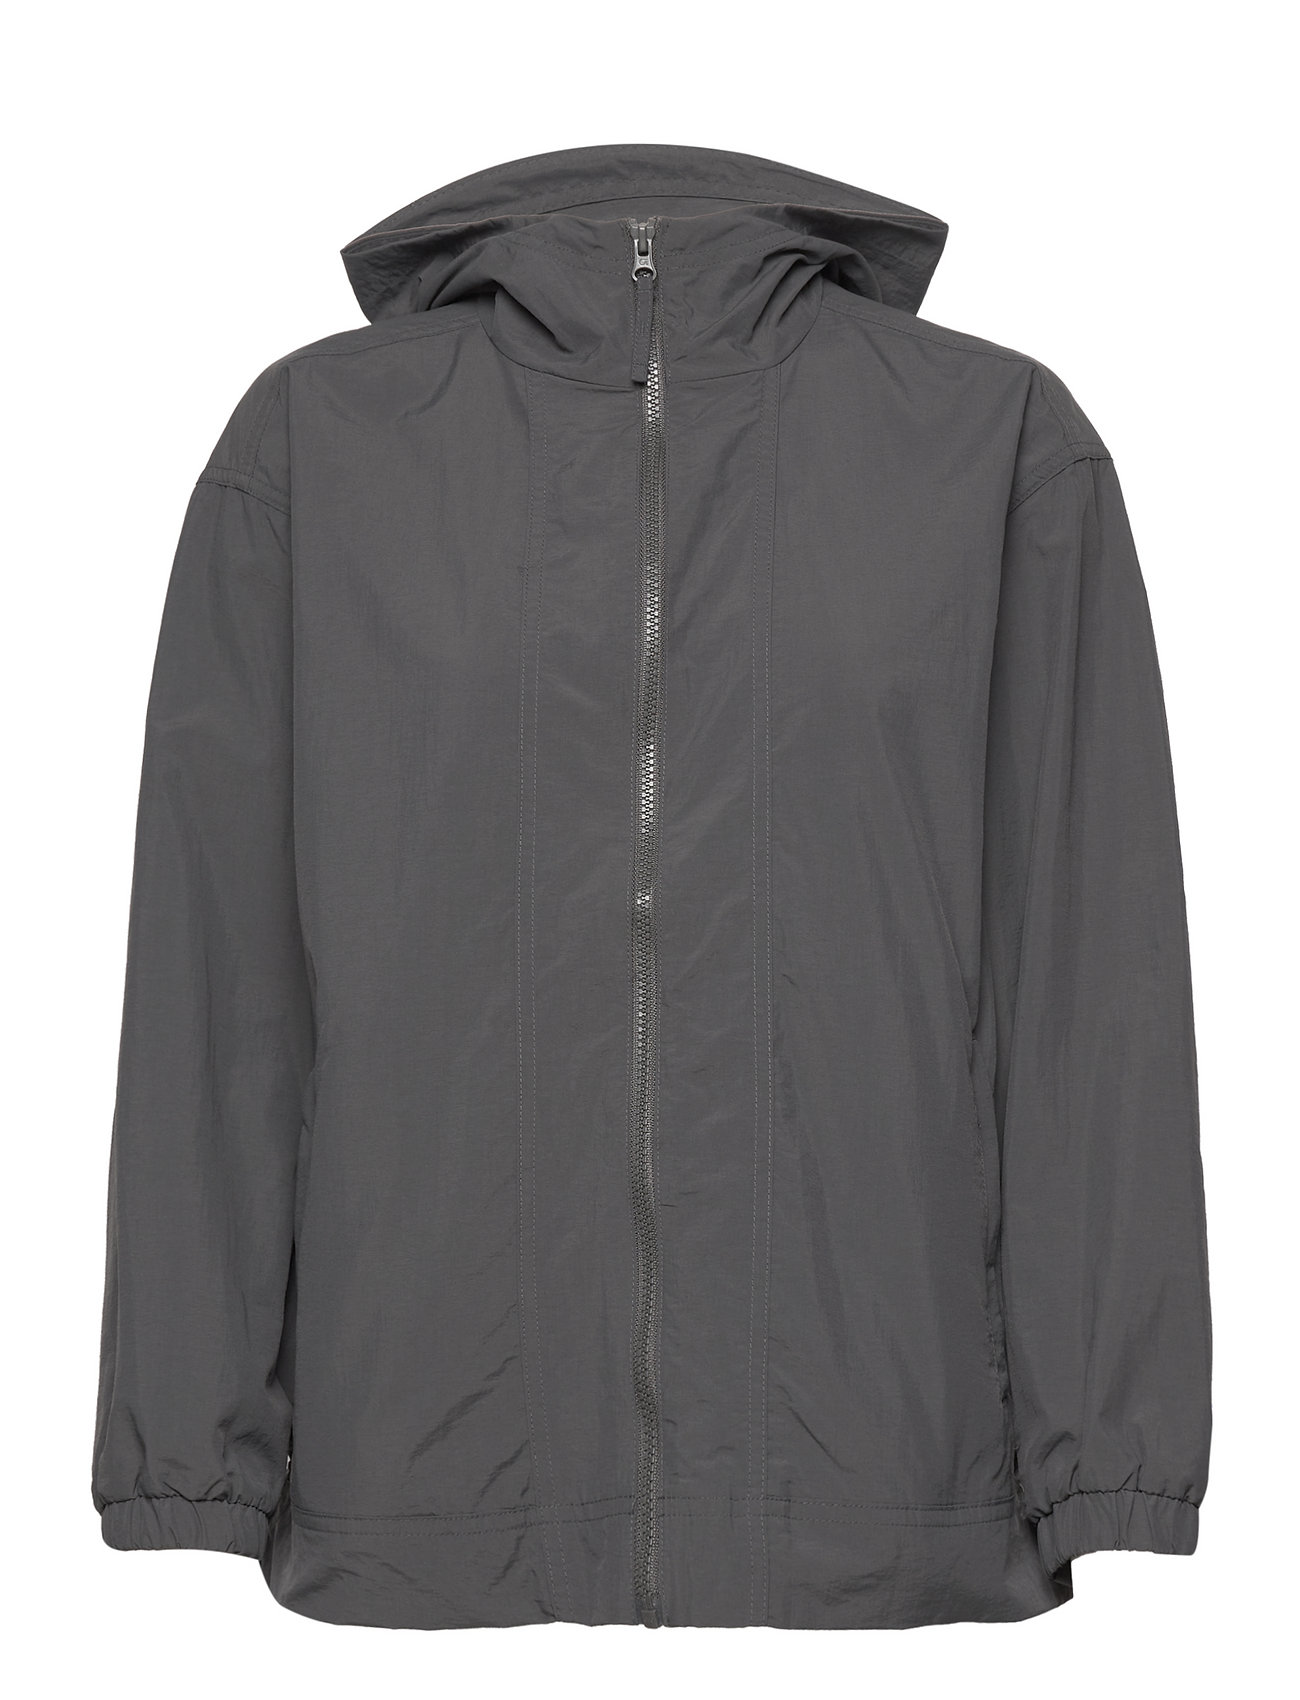 Gapfit Crinkle Nylon Hooded Jacket Outerwear Jackets Windbreakers Grå GAP